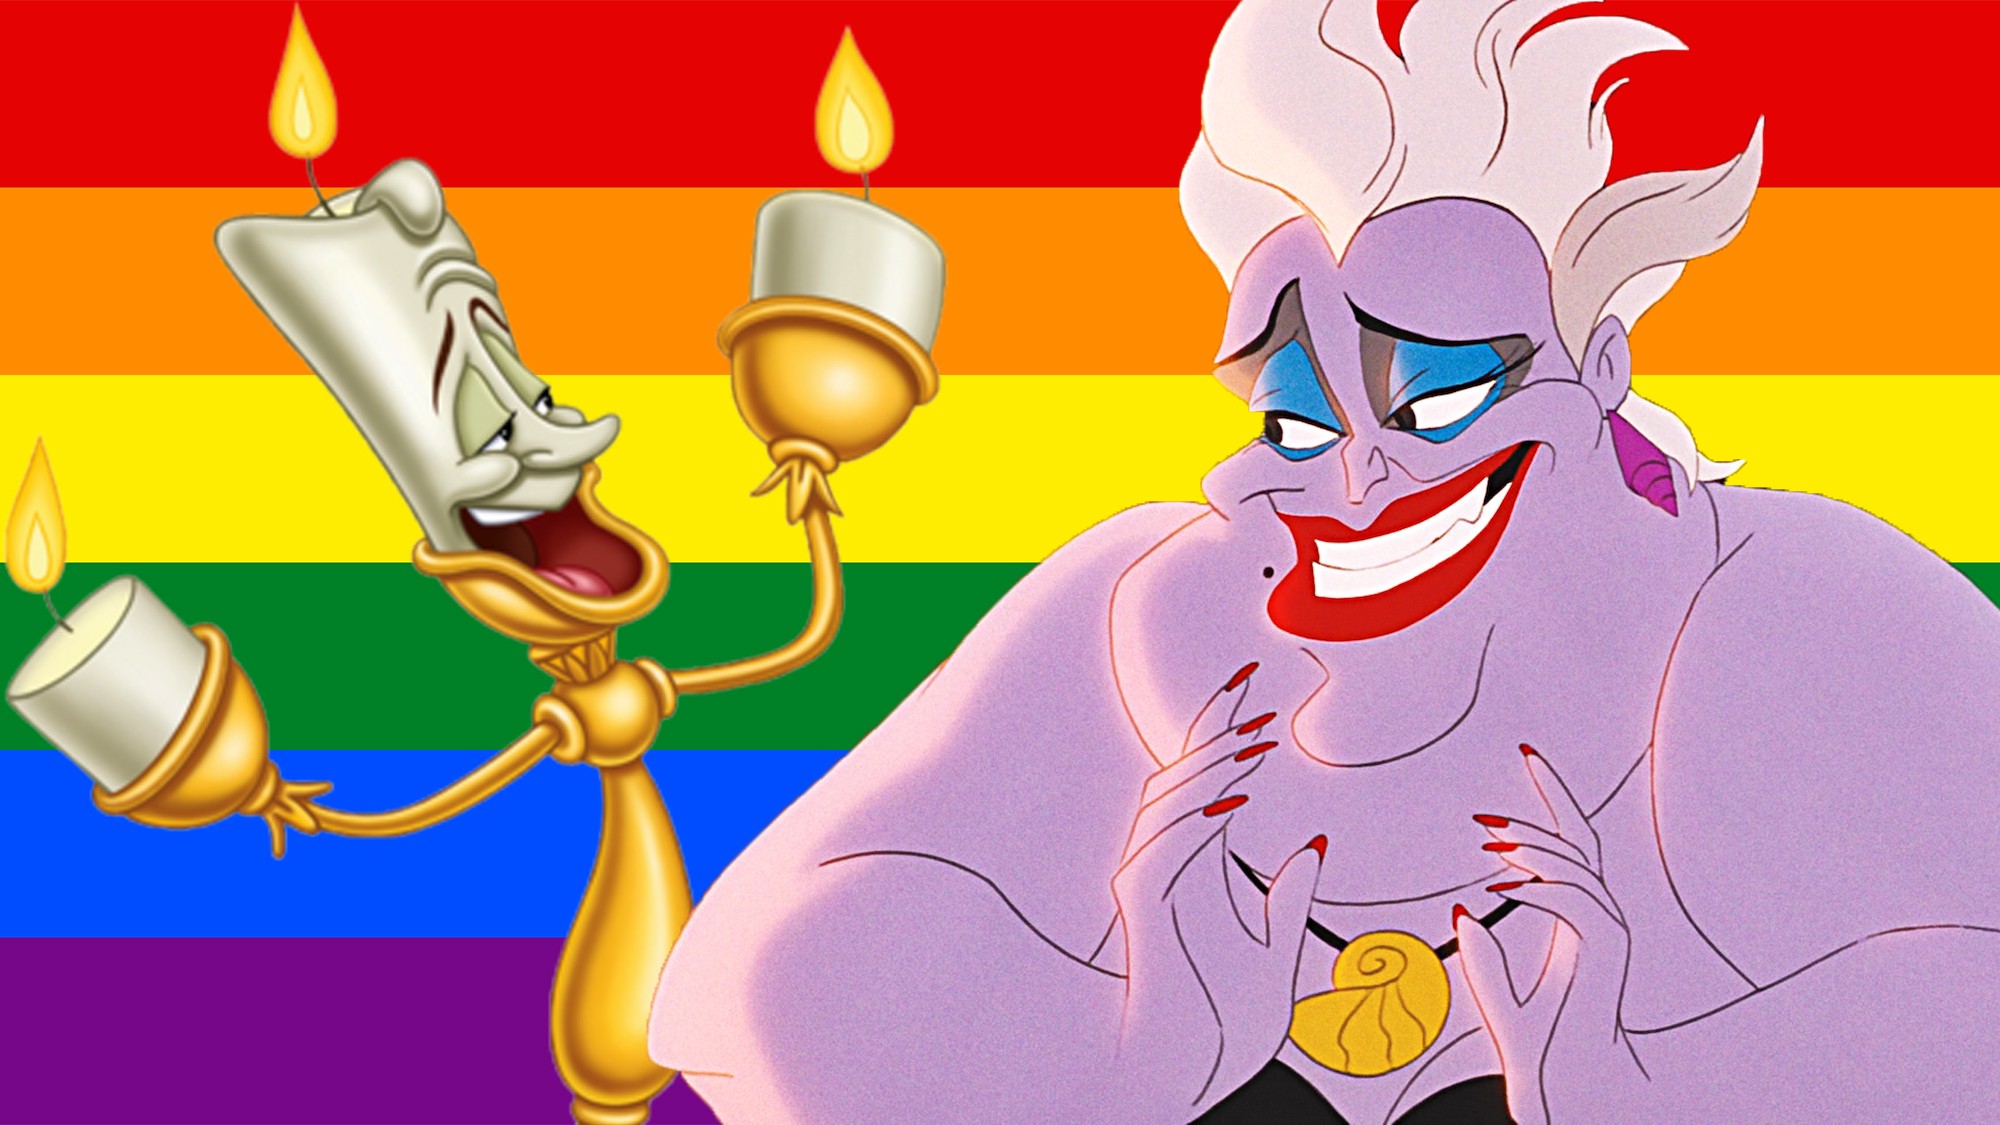 ‘Ljepotica i zvijer’ i ‘Mala sirena’ su zapravo queer